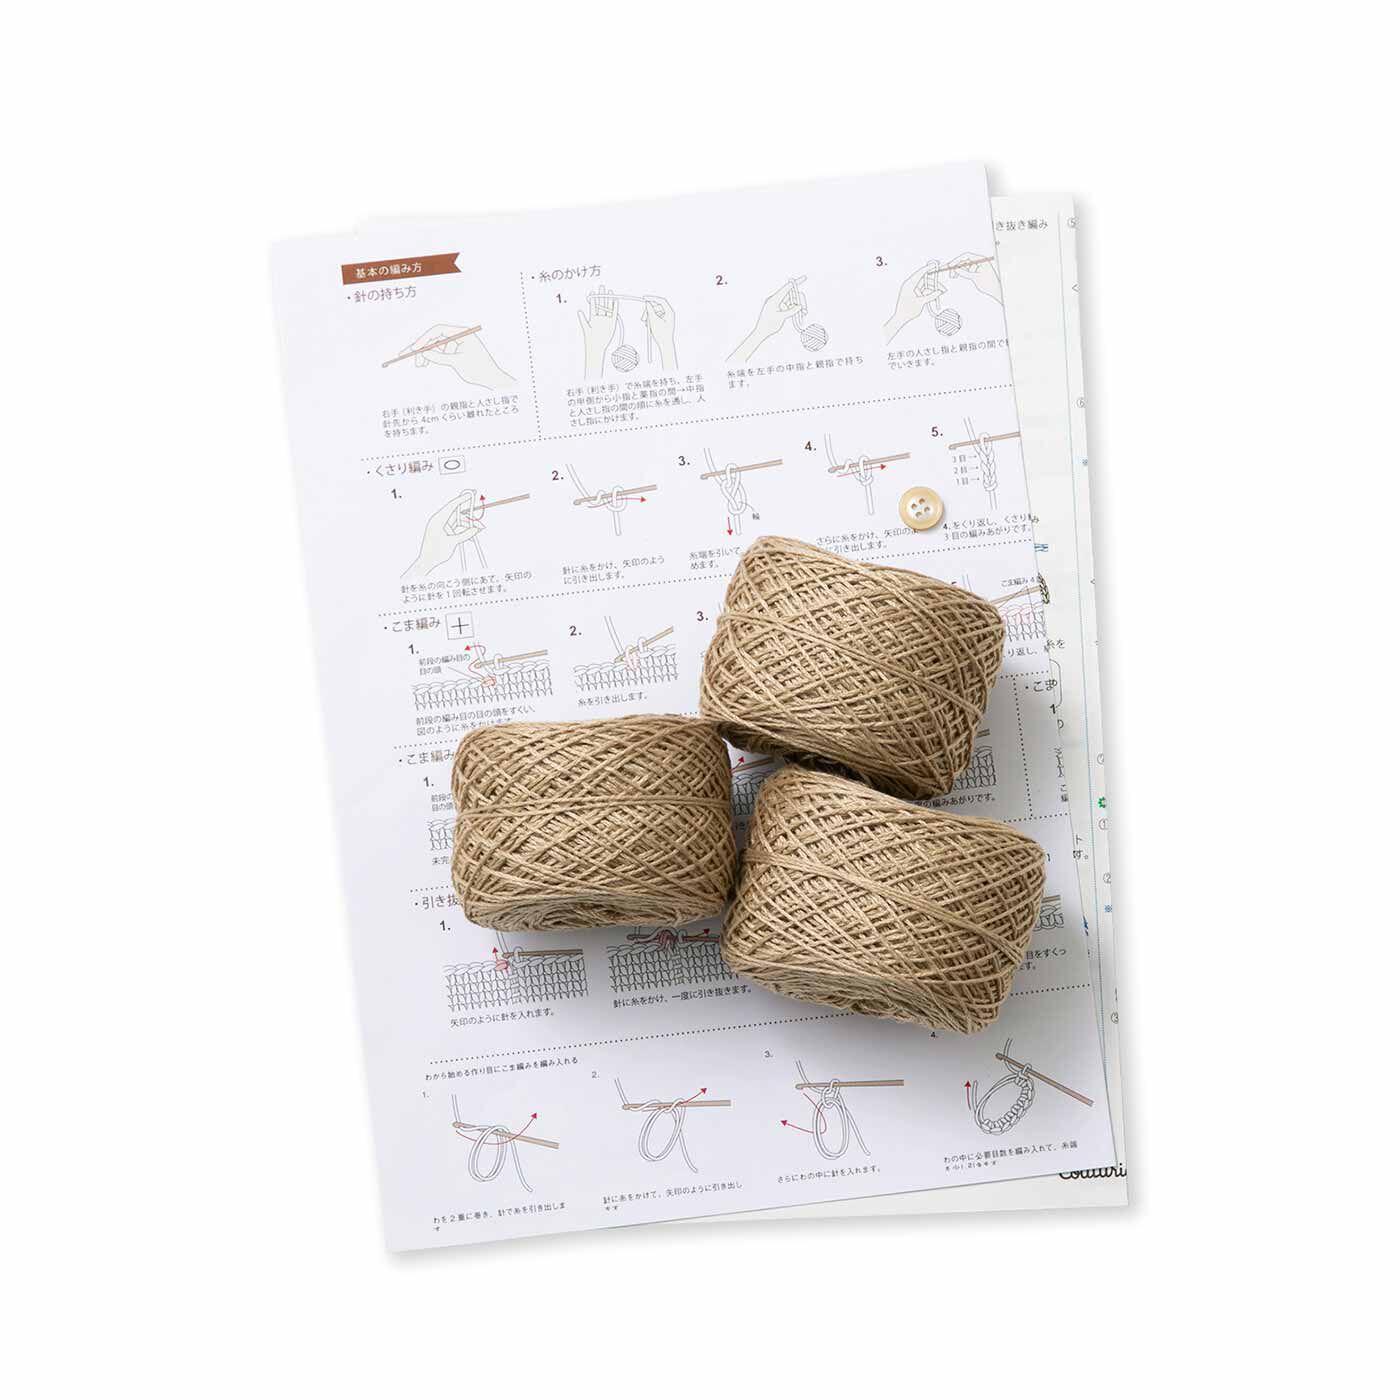 Couturier|リサイクルポリエステルの糸で編む 日常使いのかぎ針マルシェバッグの会|●1回分のお届けキット例です。